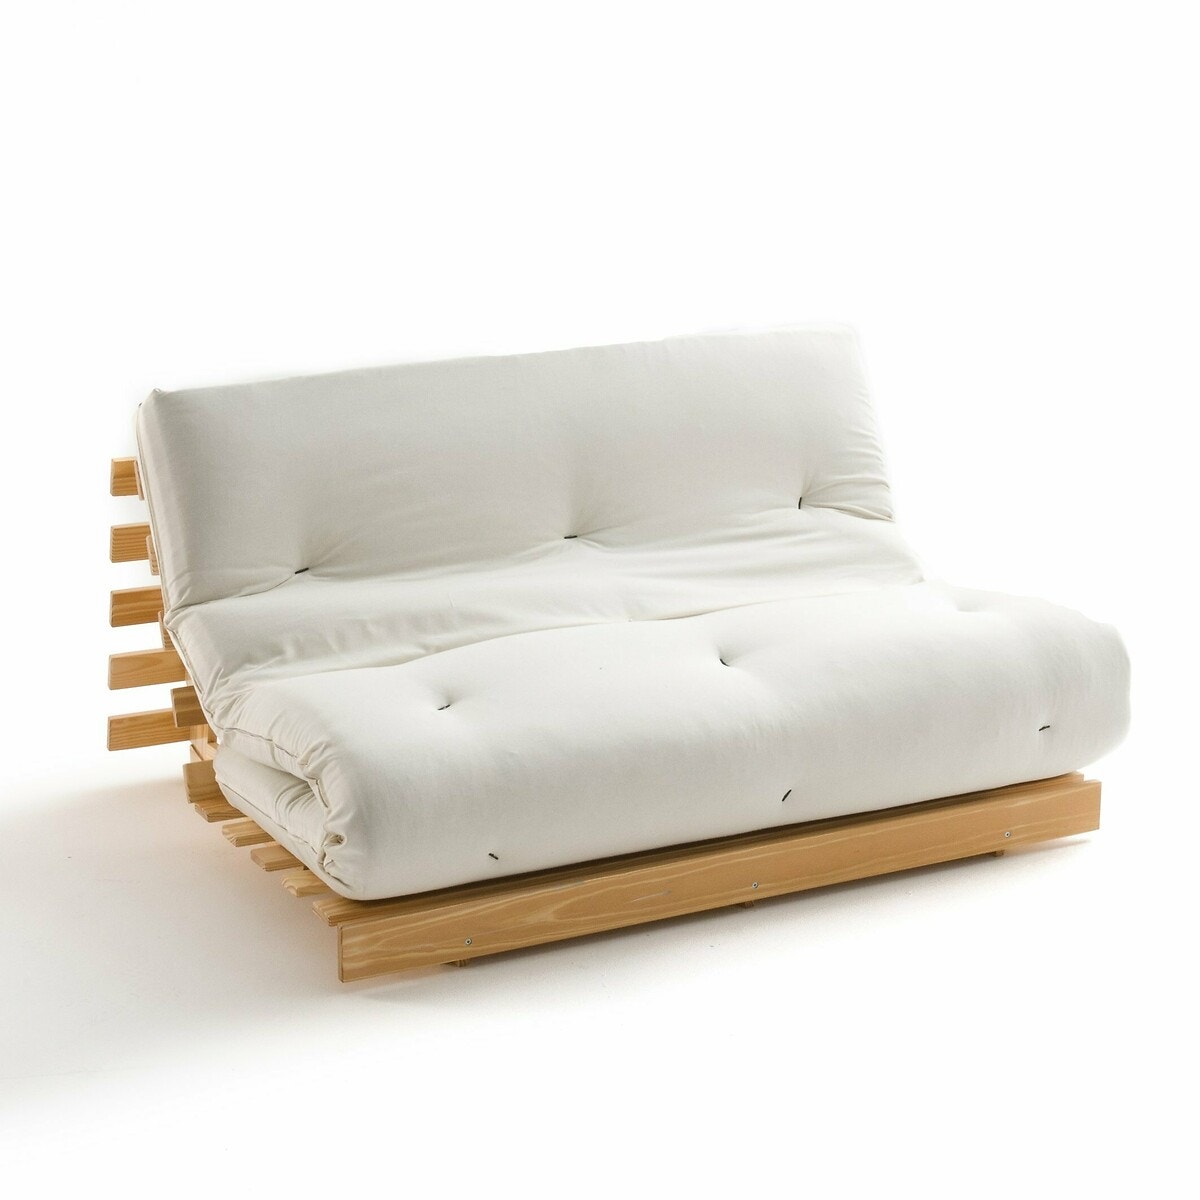 Σπίτι > Κλινοσκεπάσματα > Στρώματα > Στρώματα αφρού Στρώμα futon από βαμβάκι για τον καναπέ THAÏ 90x190 cm